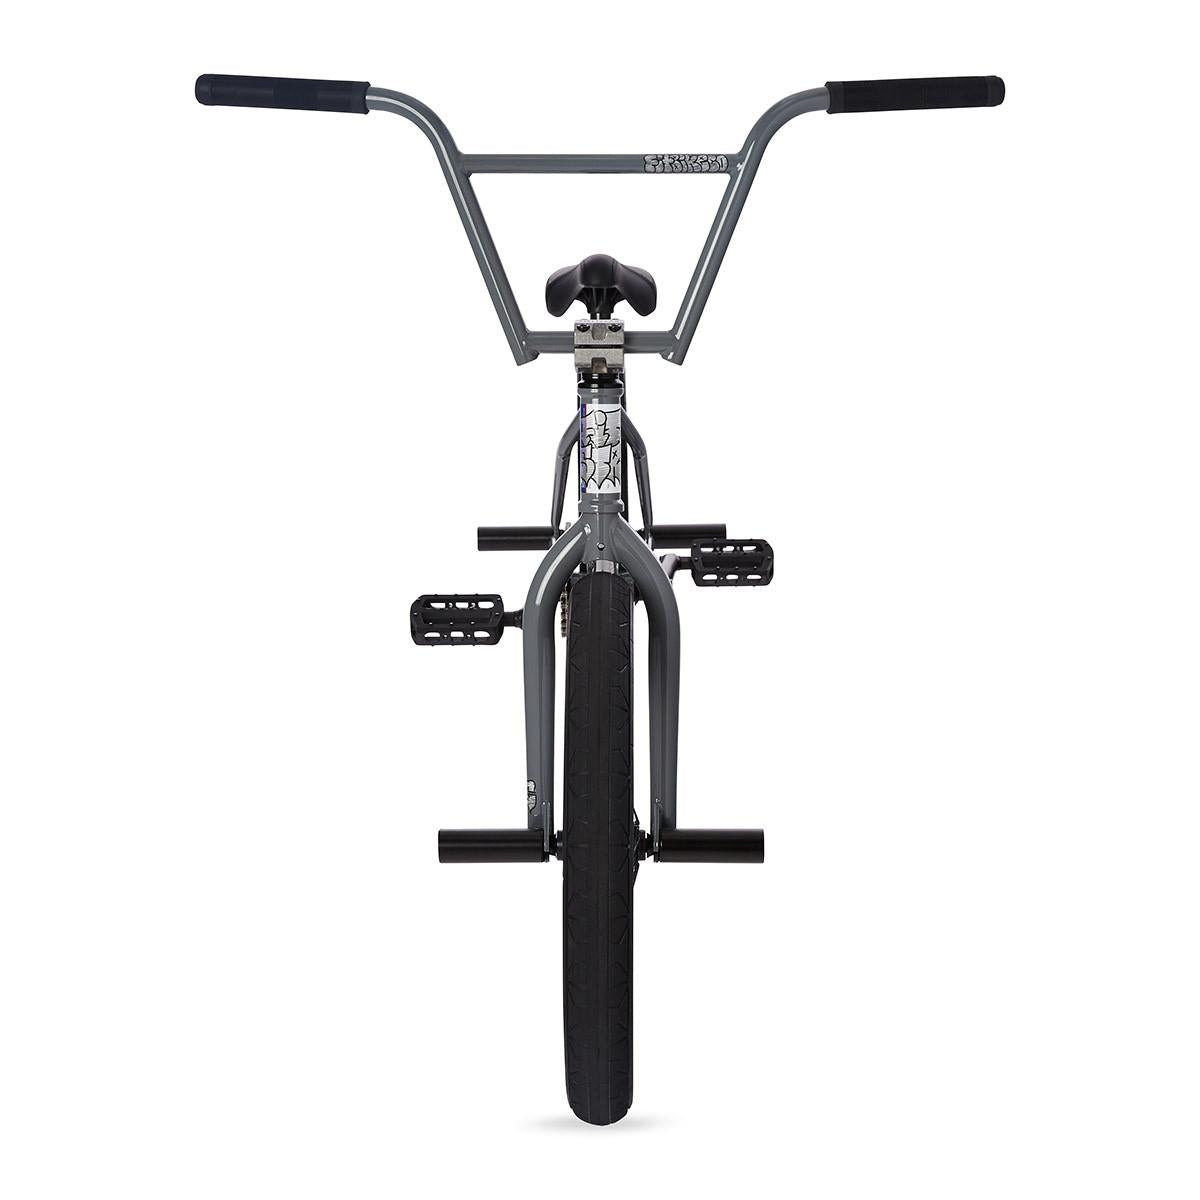 Fit STR Freecoaster (MD) BMX Vélo